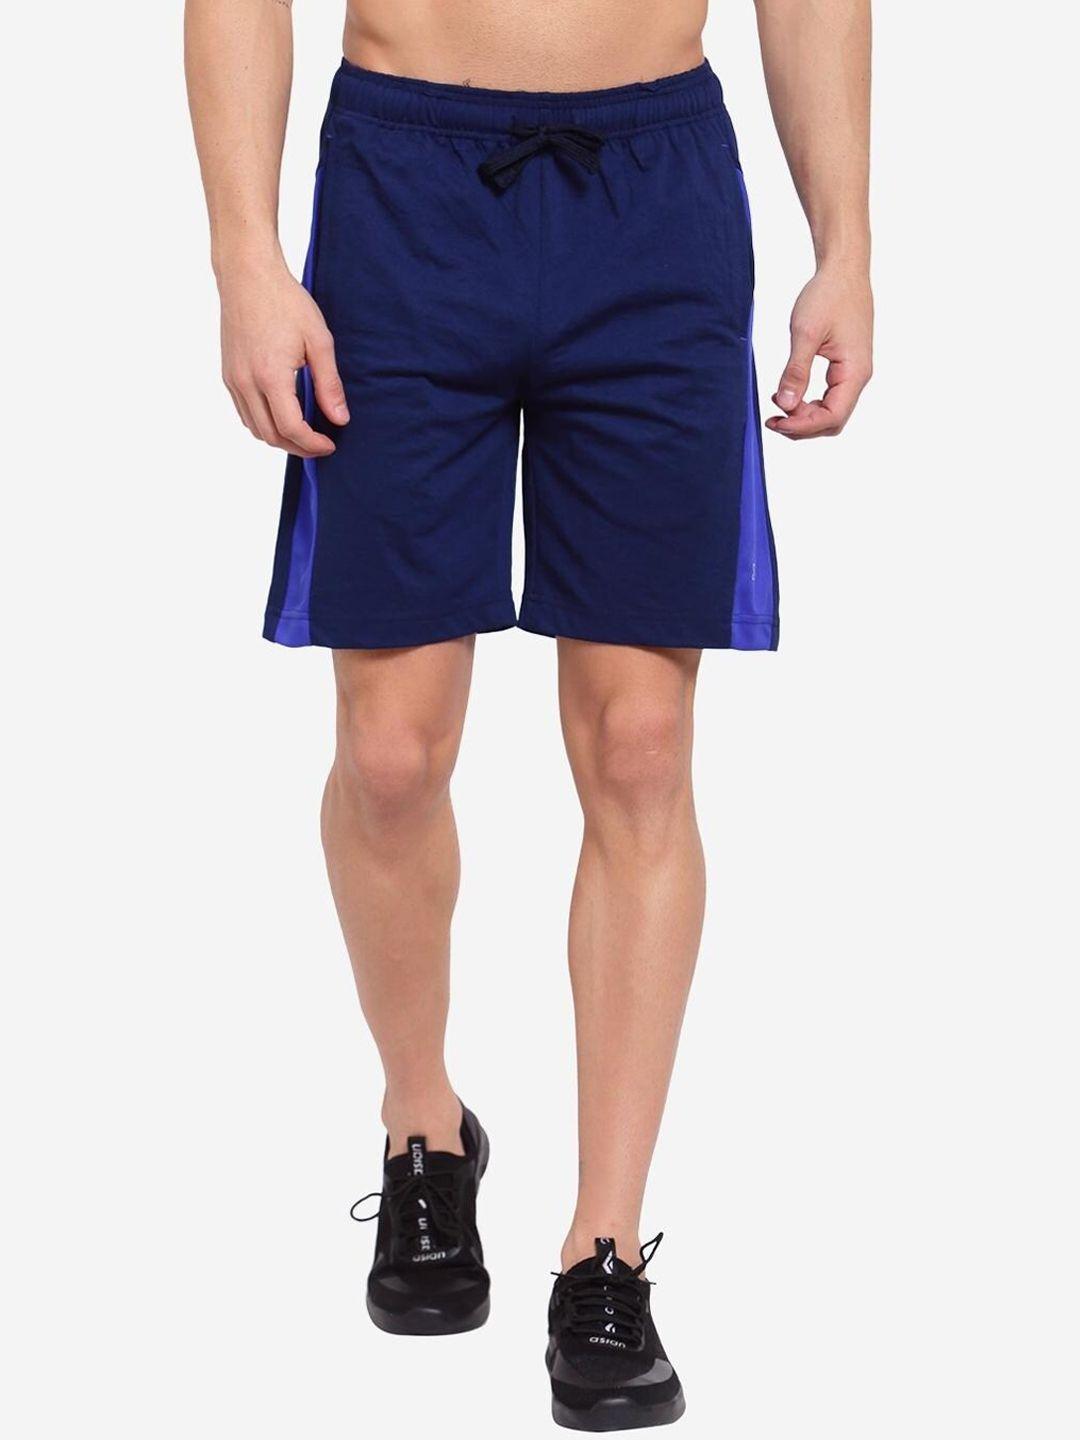 sporto men navy blue sports shorts